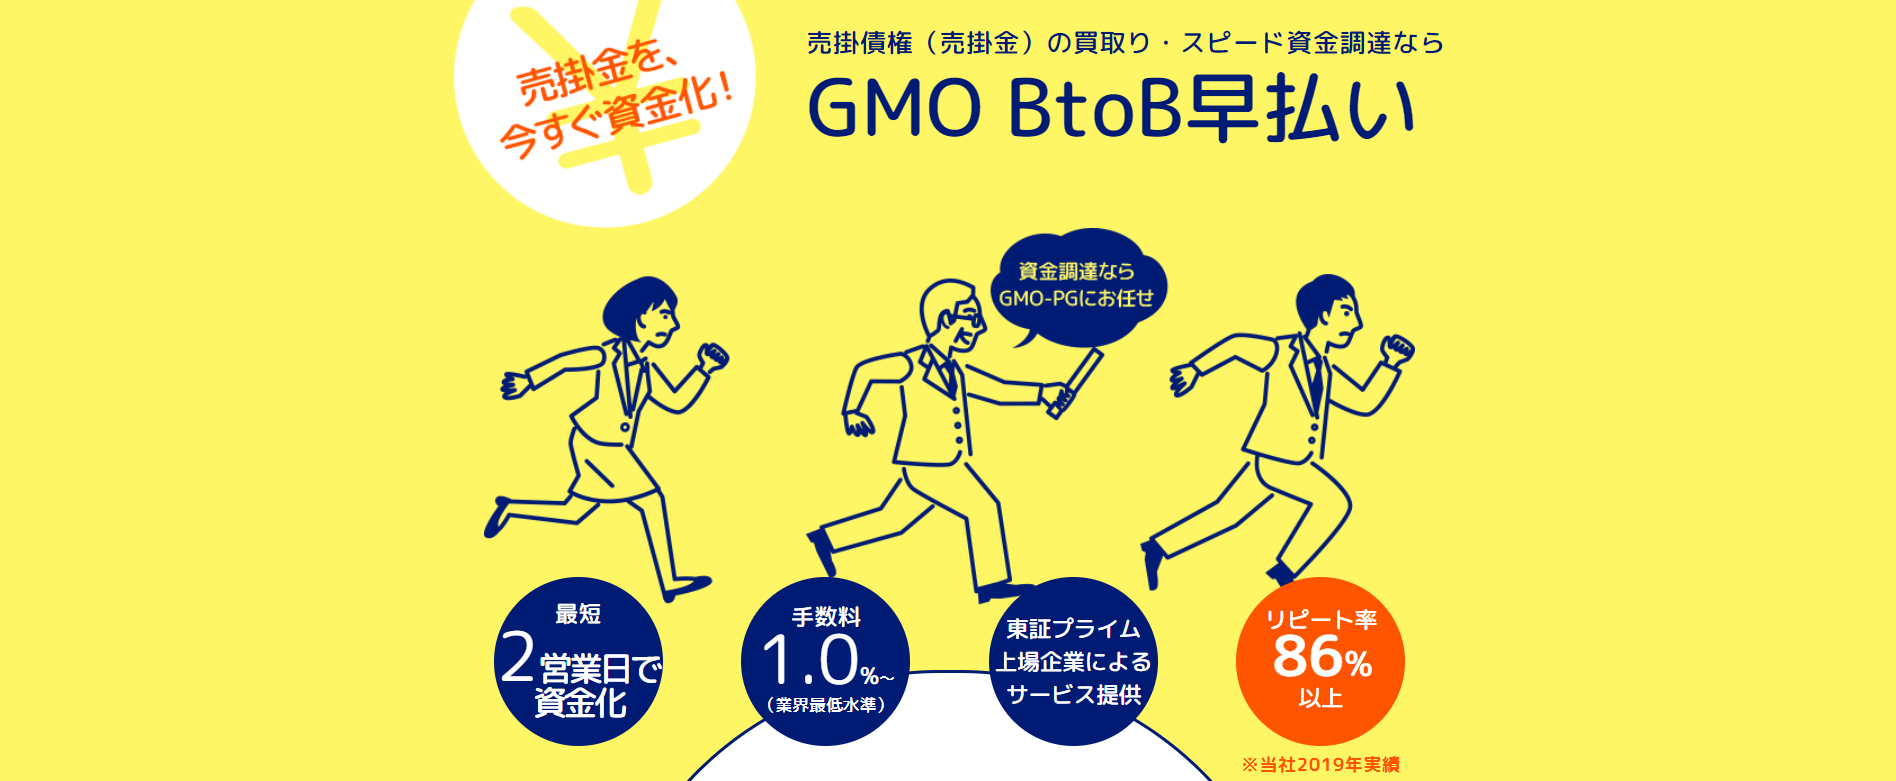 ファクタリング_おすすめ_GMO BtoB早払い